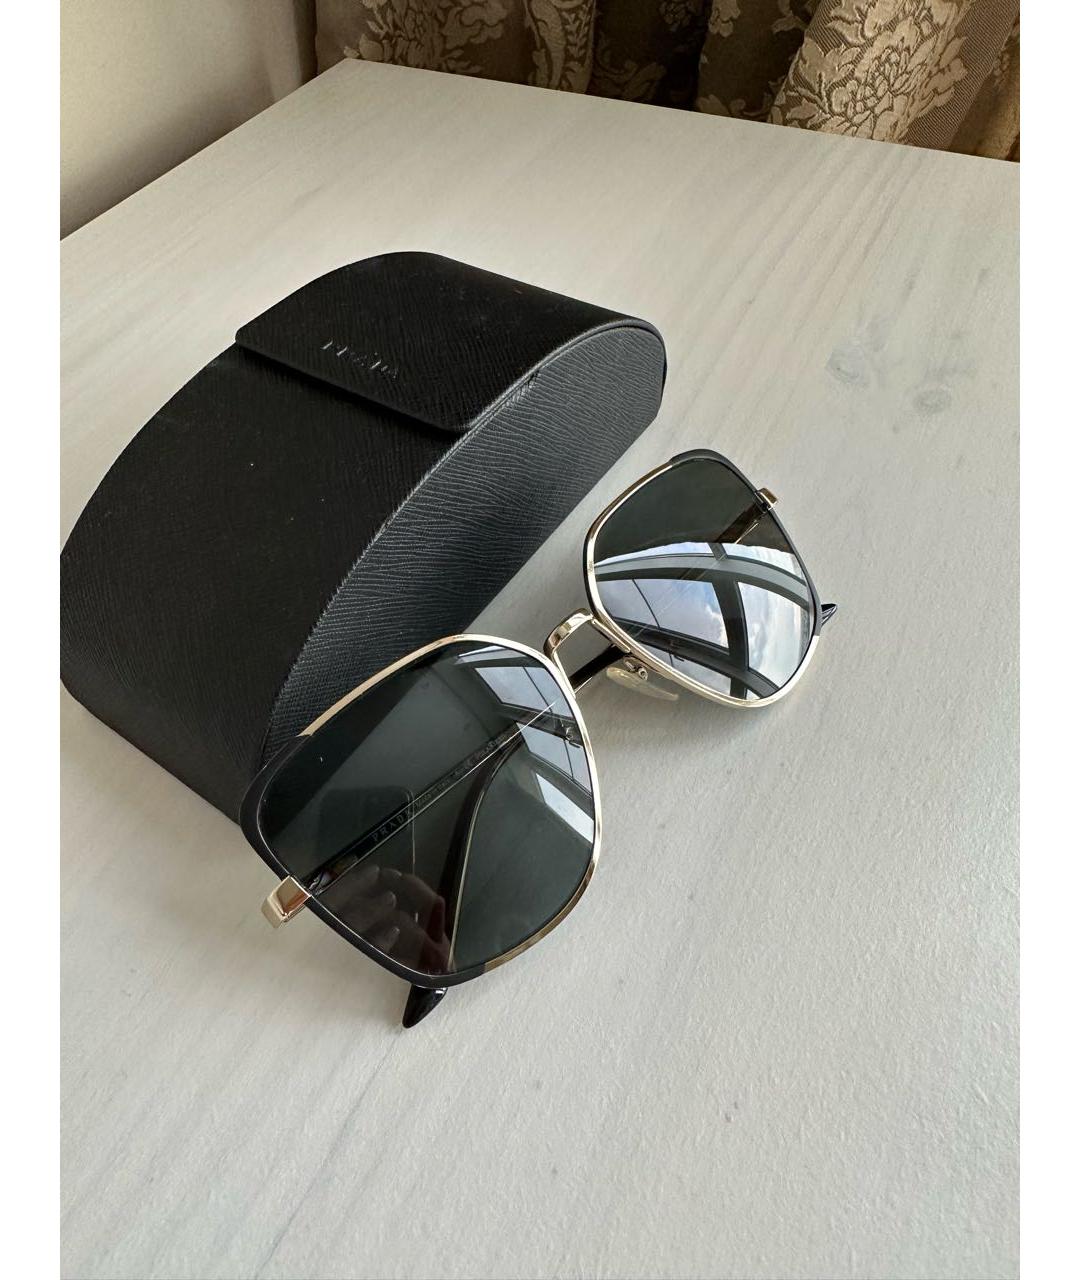 PRADA Черные металлические солнцезащитные очки, фото 4